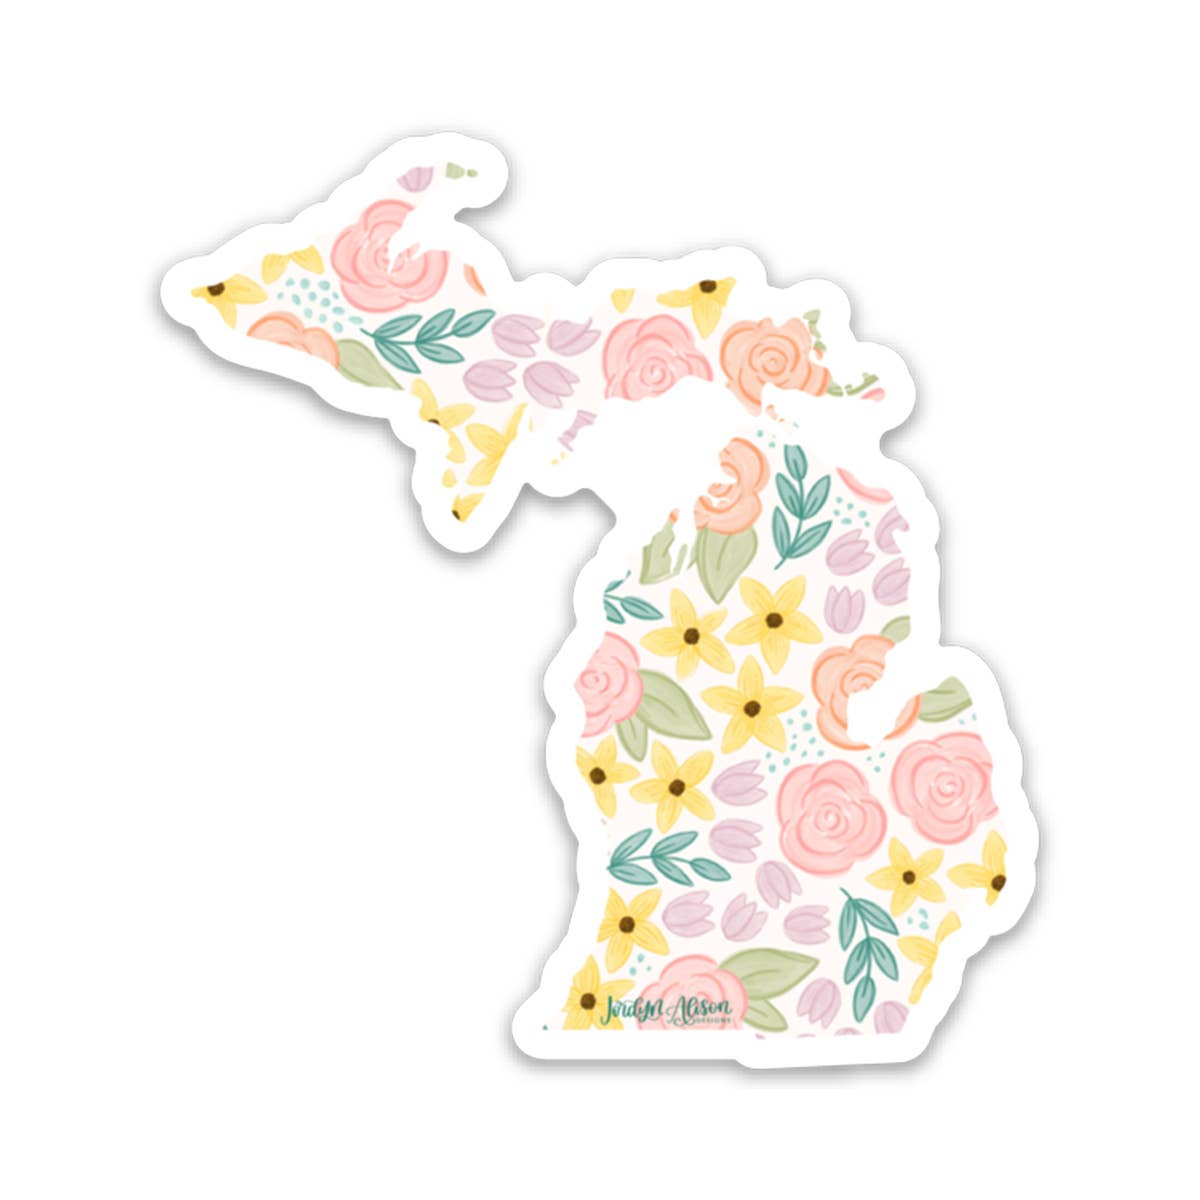 Michigan Spring Floral Vinyl Sticker, MI Sticker